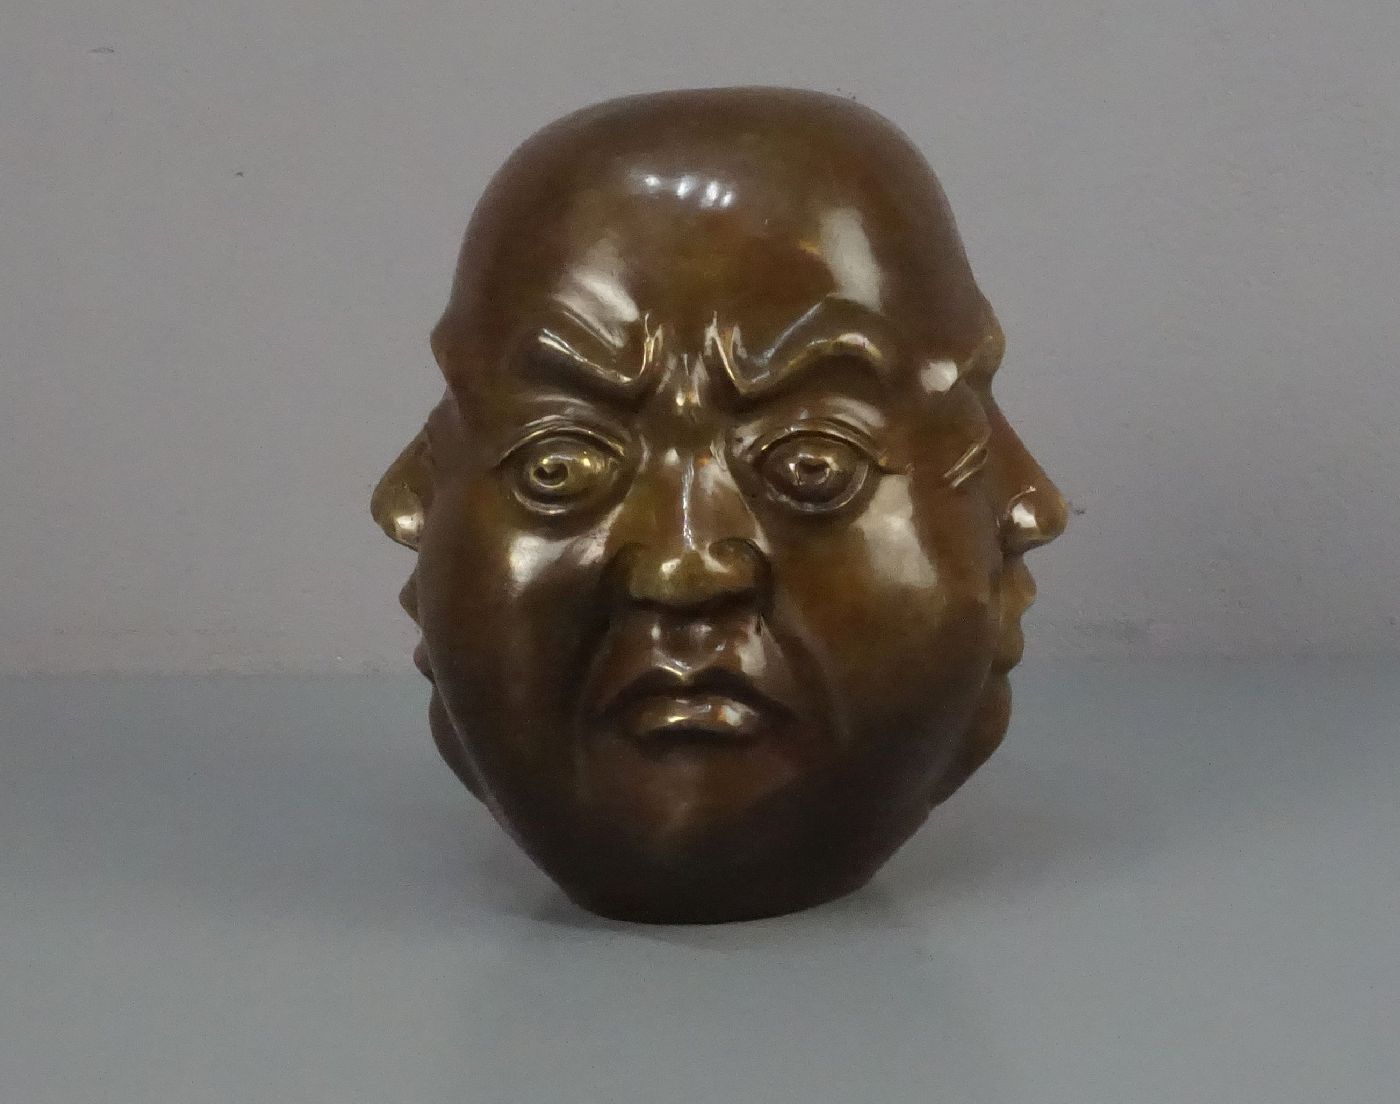 CHINESISCHER BILDHAUER des 20. Jh., Skulptur / sculpture: "Kopf mit vier Gesichtern", Bronze, - Image 3 of 5